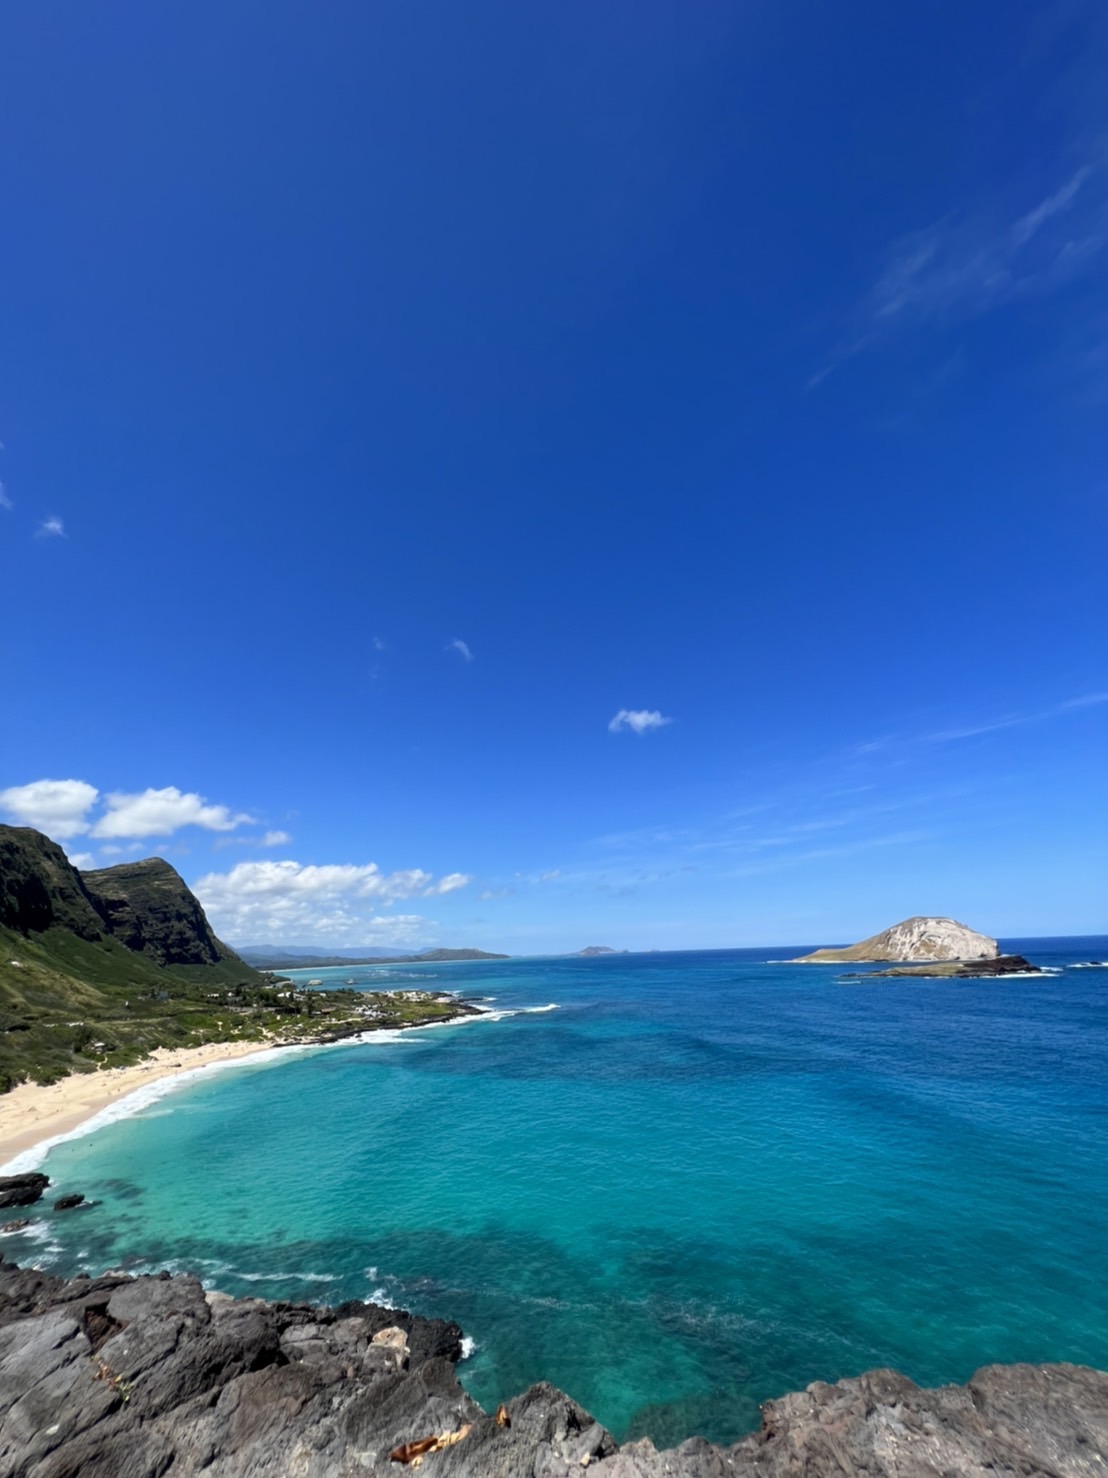 ハワイへの渡航客と消費額